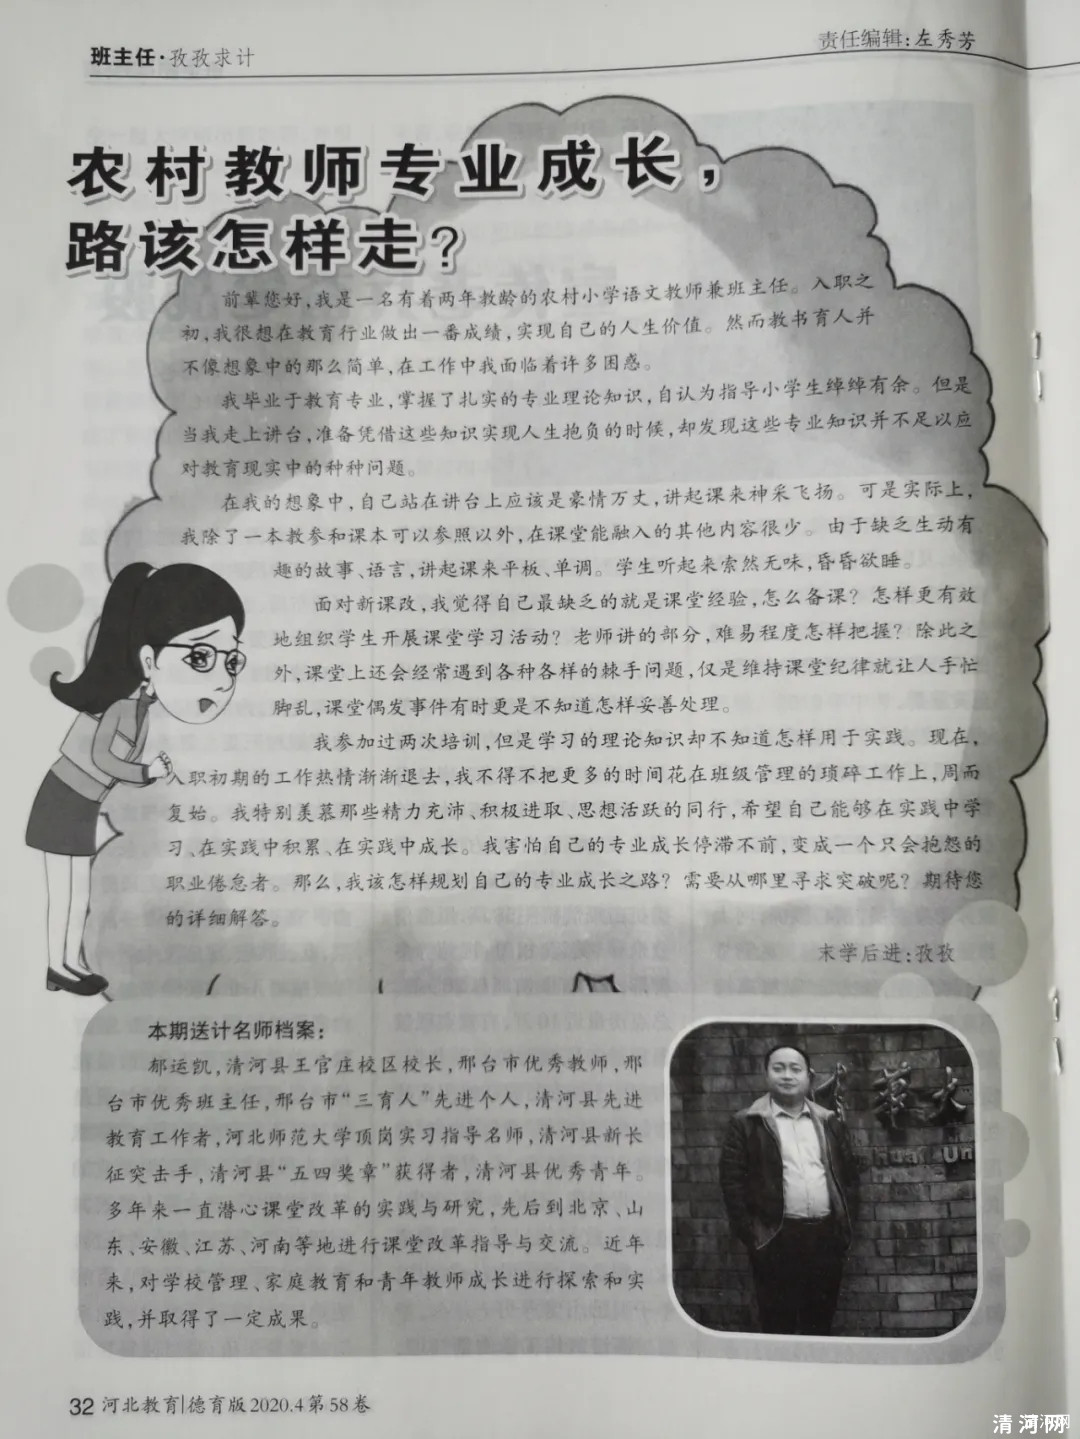 《河北教育》杂志报道我县王官庄校区农村教师专业成长经验